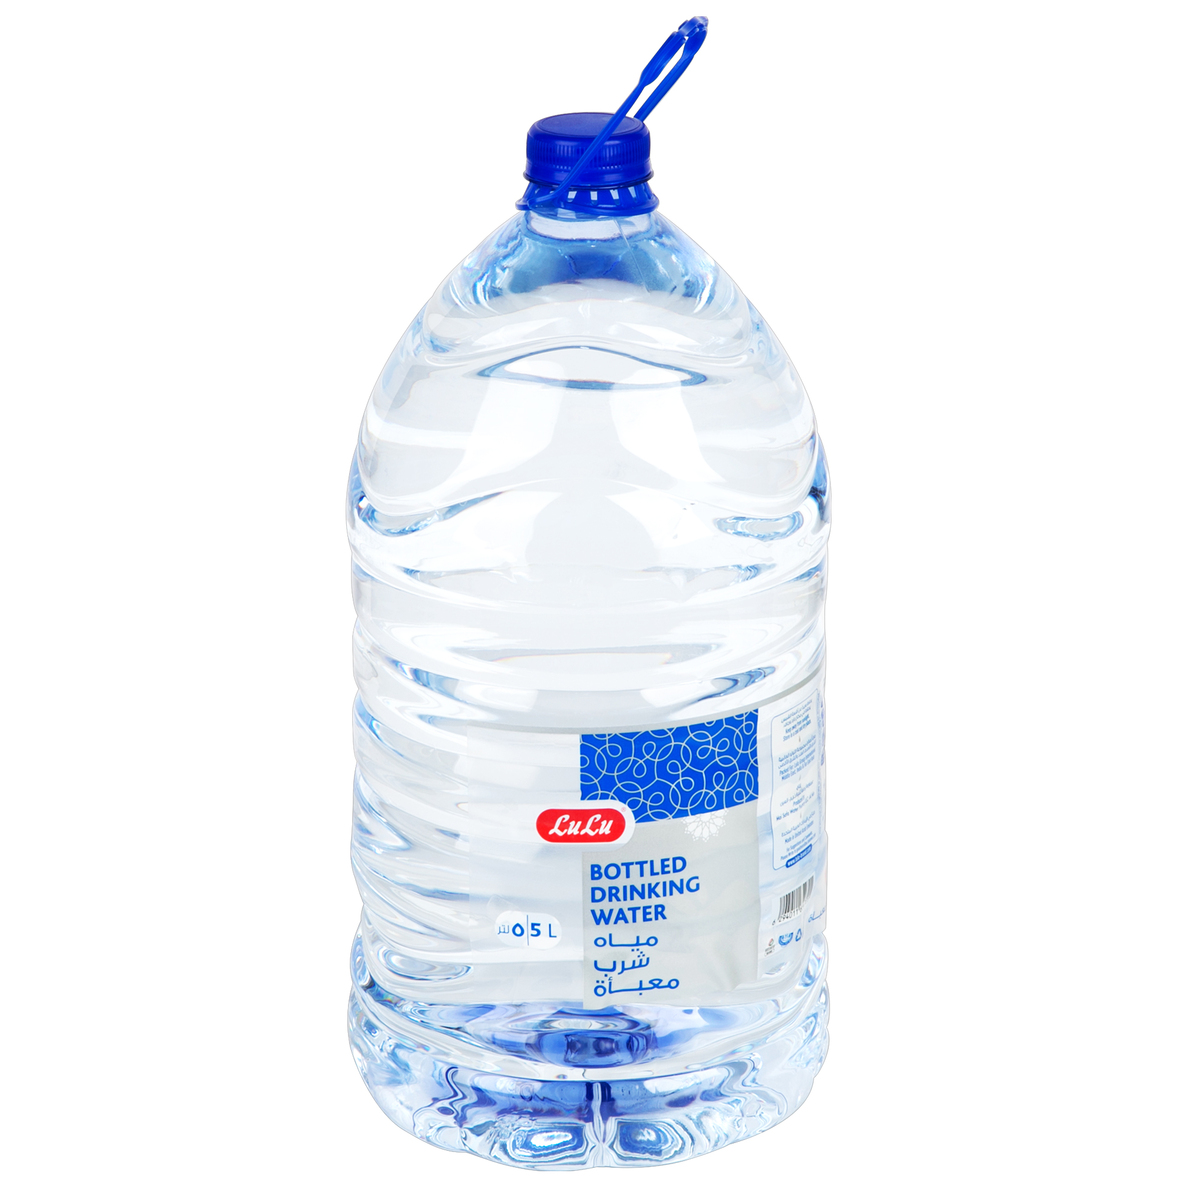 LuLu Bottled Drinking Water 5Litre